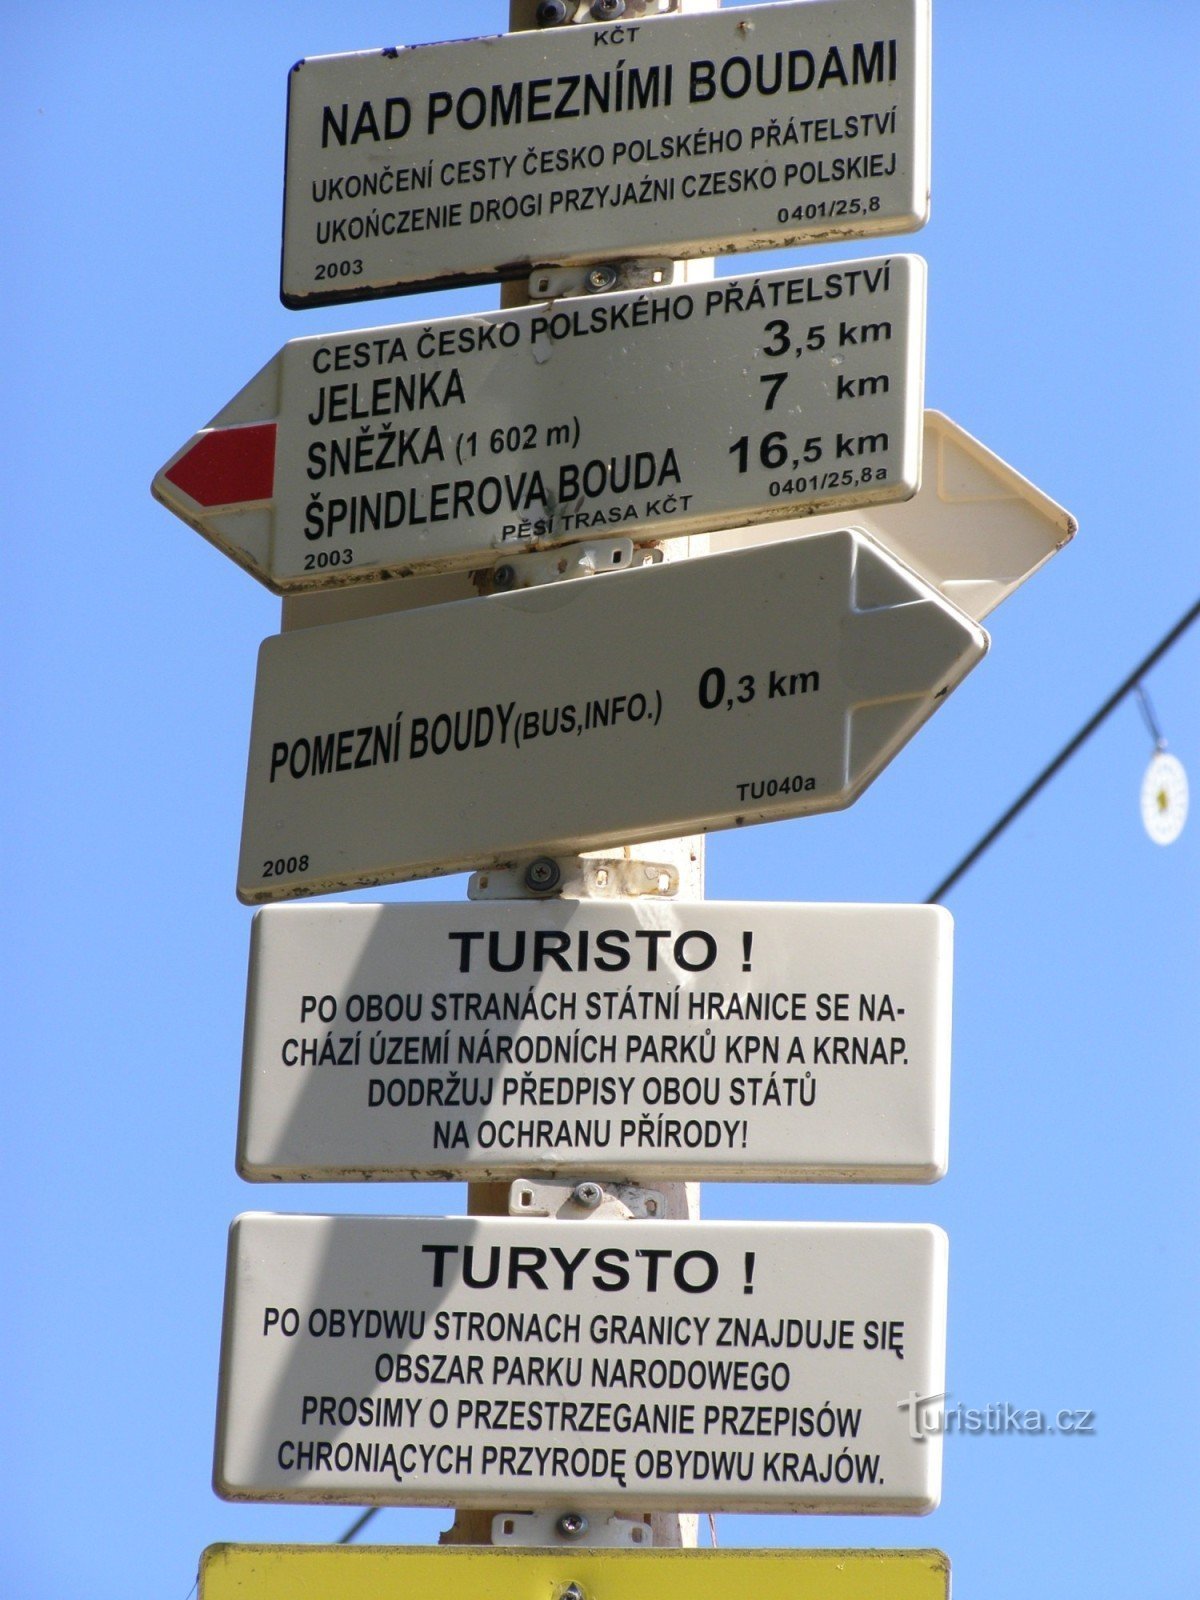 the tourist crossroads Nad Pomezní Boudami